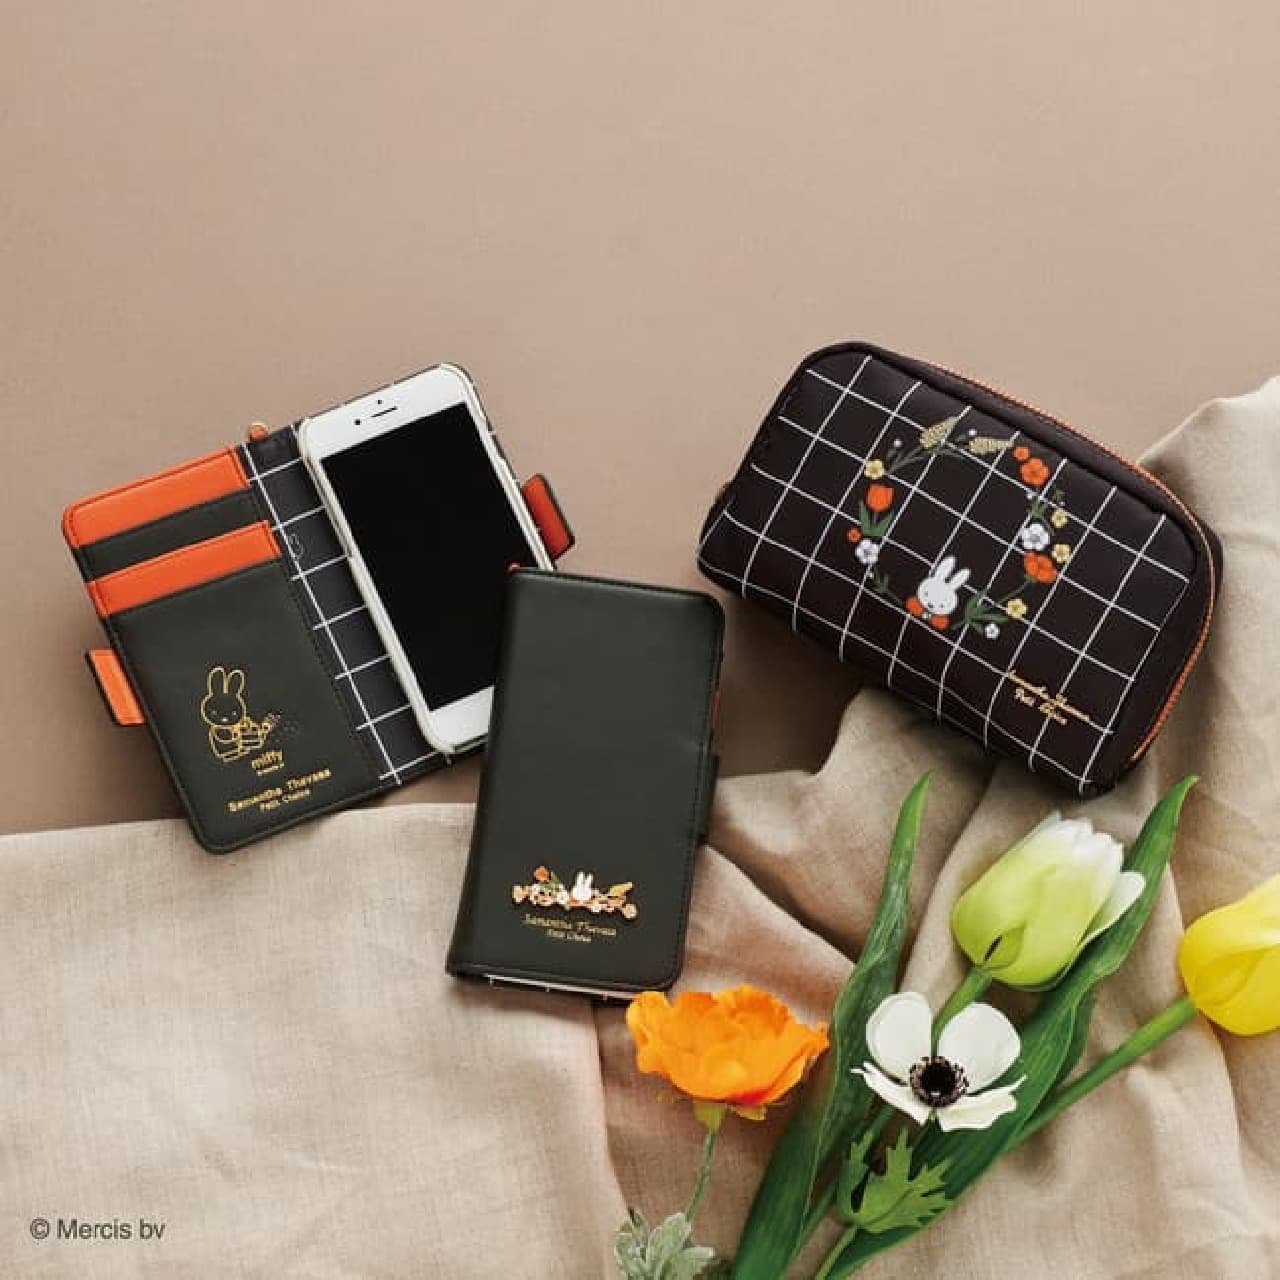 サマンサタバサプチチョイス×ミッフィーのコレクション -- 財布小物・iPhoneケースなど